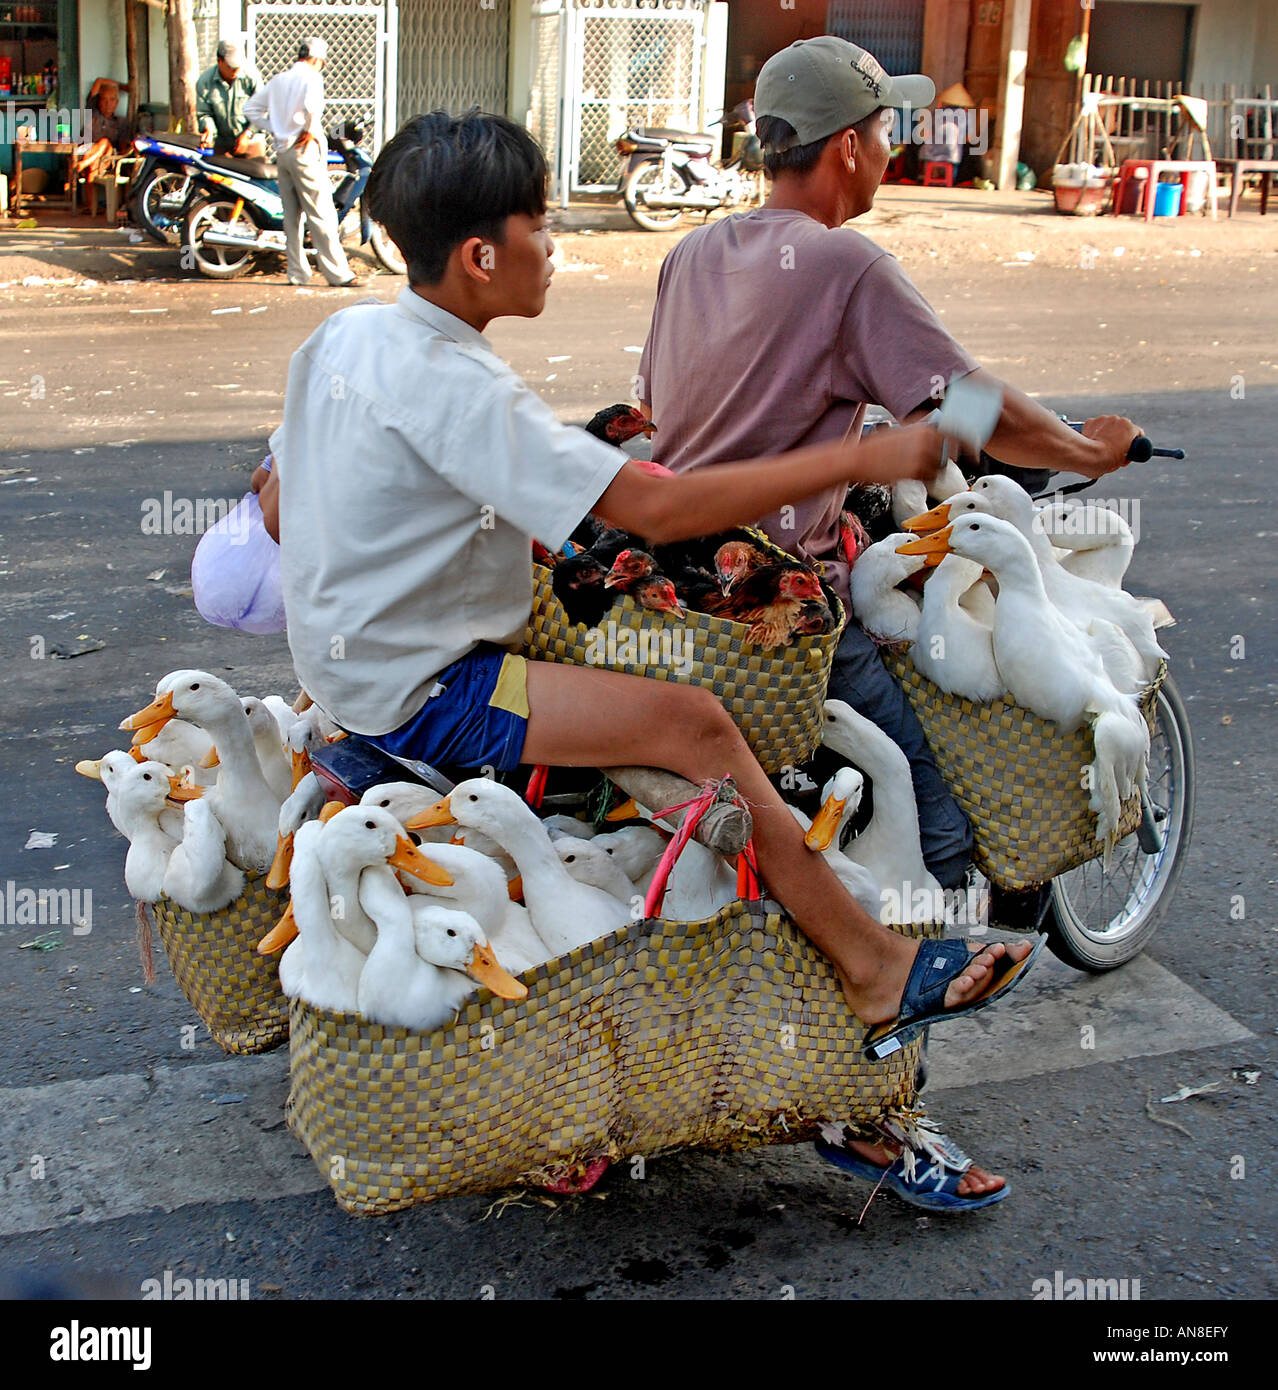 Vietnam Saigon Ho Chi Minh ville gooseherd scooter des neiges poulet homme moteur de chariot de transport transport motorisé mobylette moteur b Banque D'Images